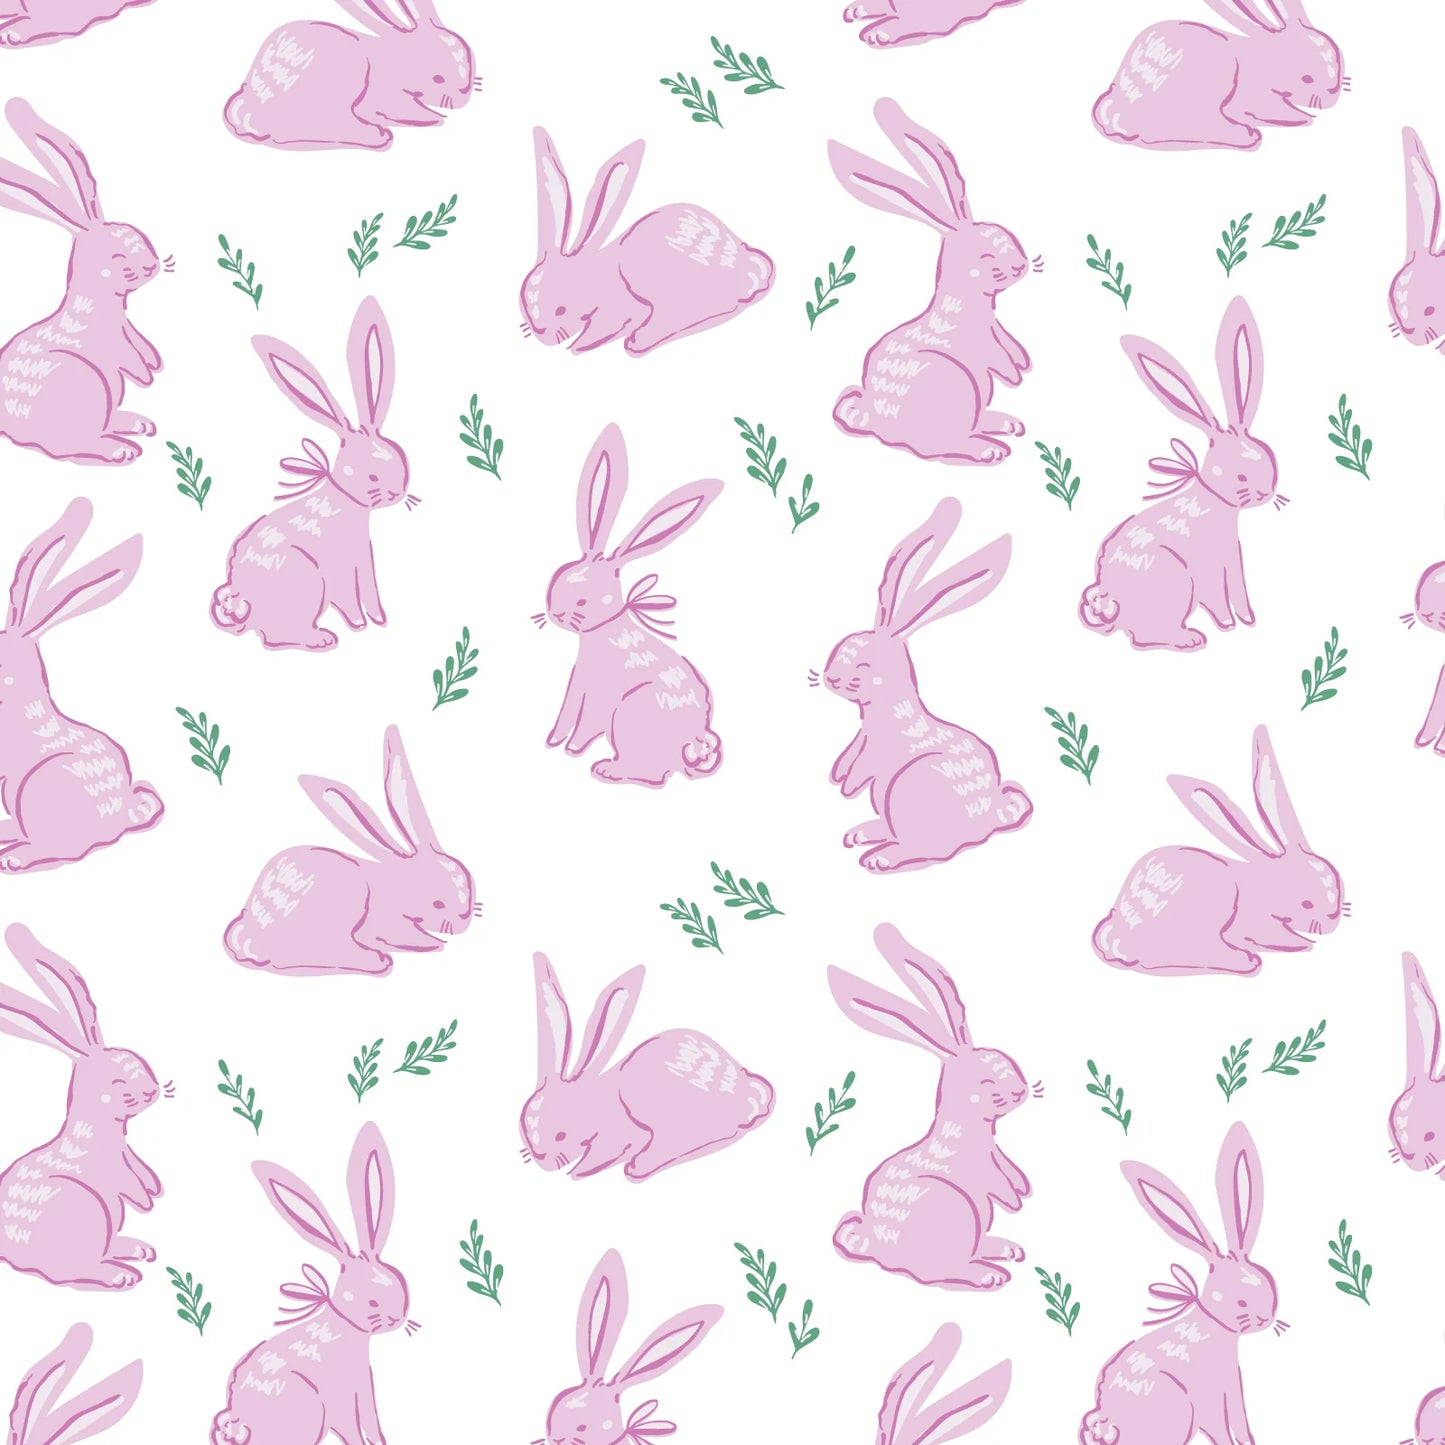 Parker Zipper Pajama Bunny Hop Pink